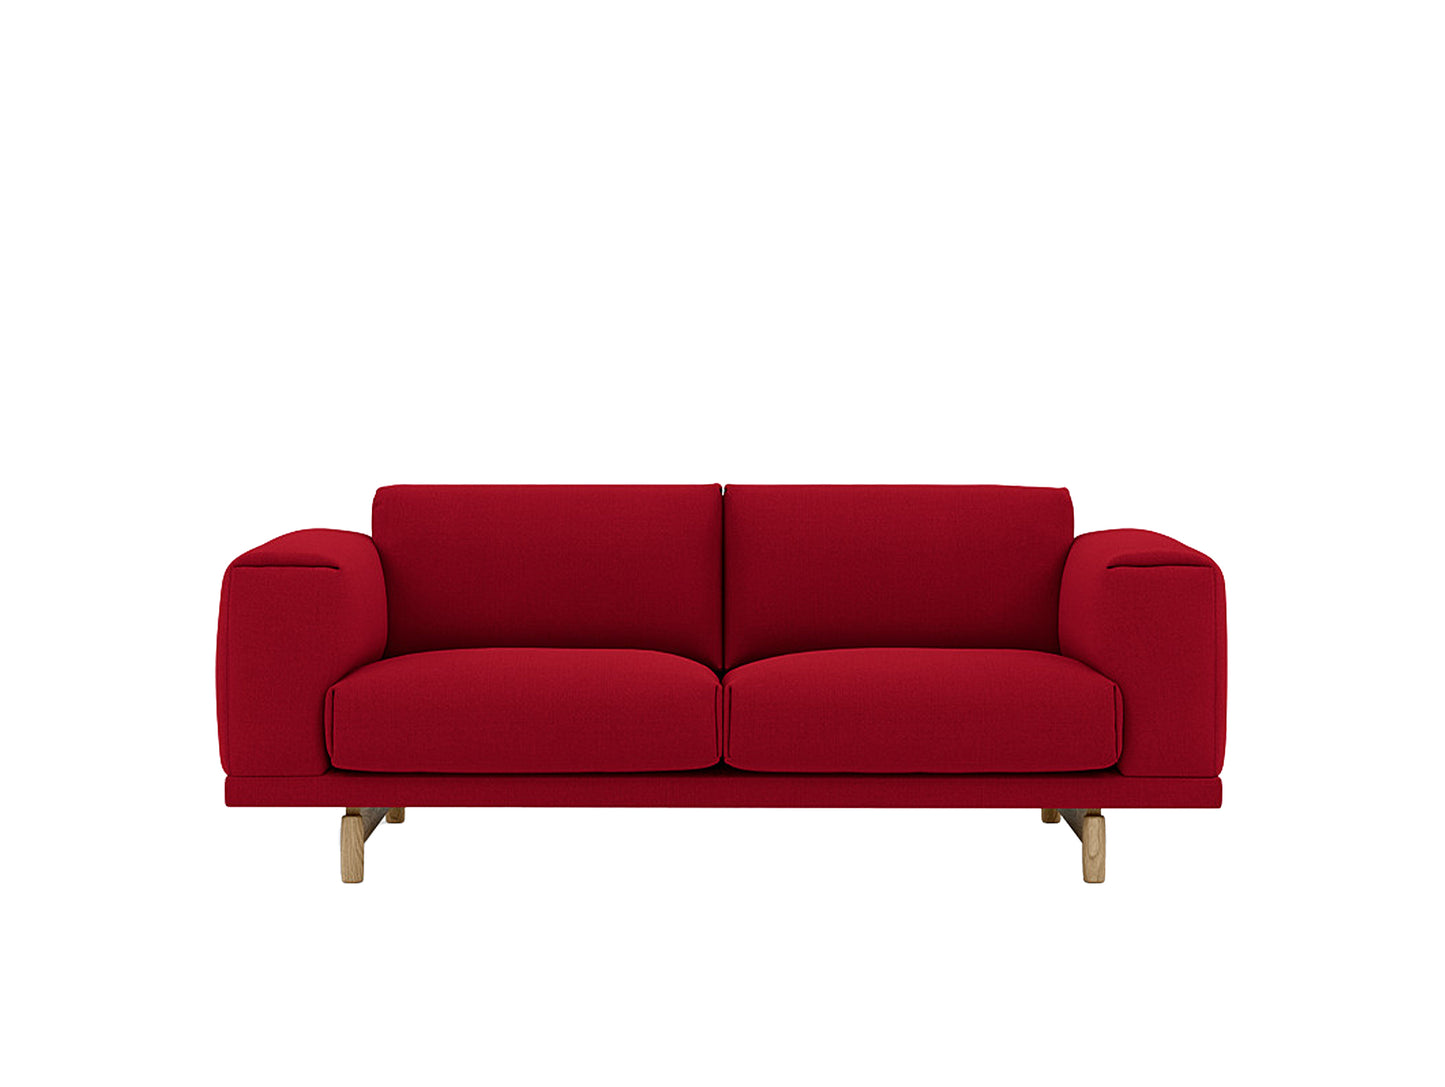 Rest Sofa by Muuto - 2 Seater / Vidar 582